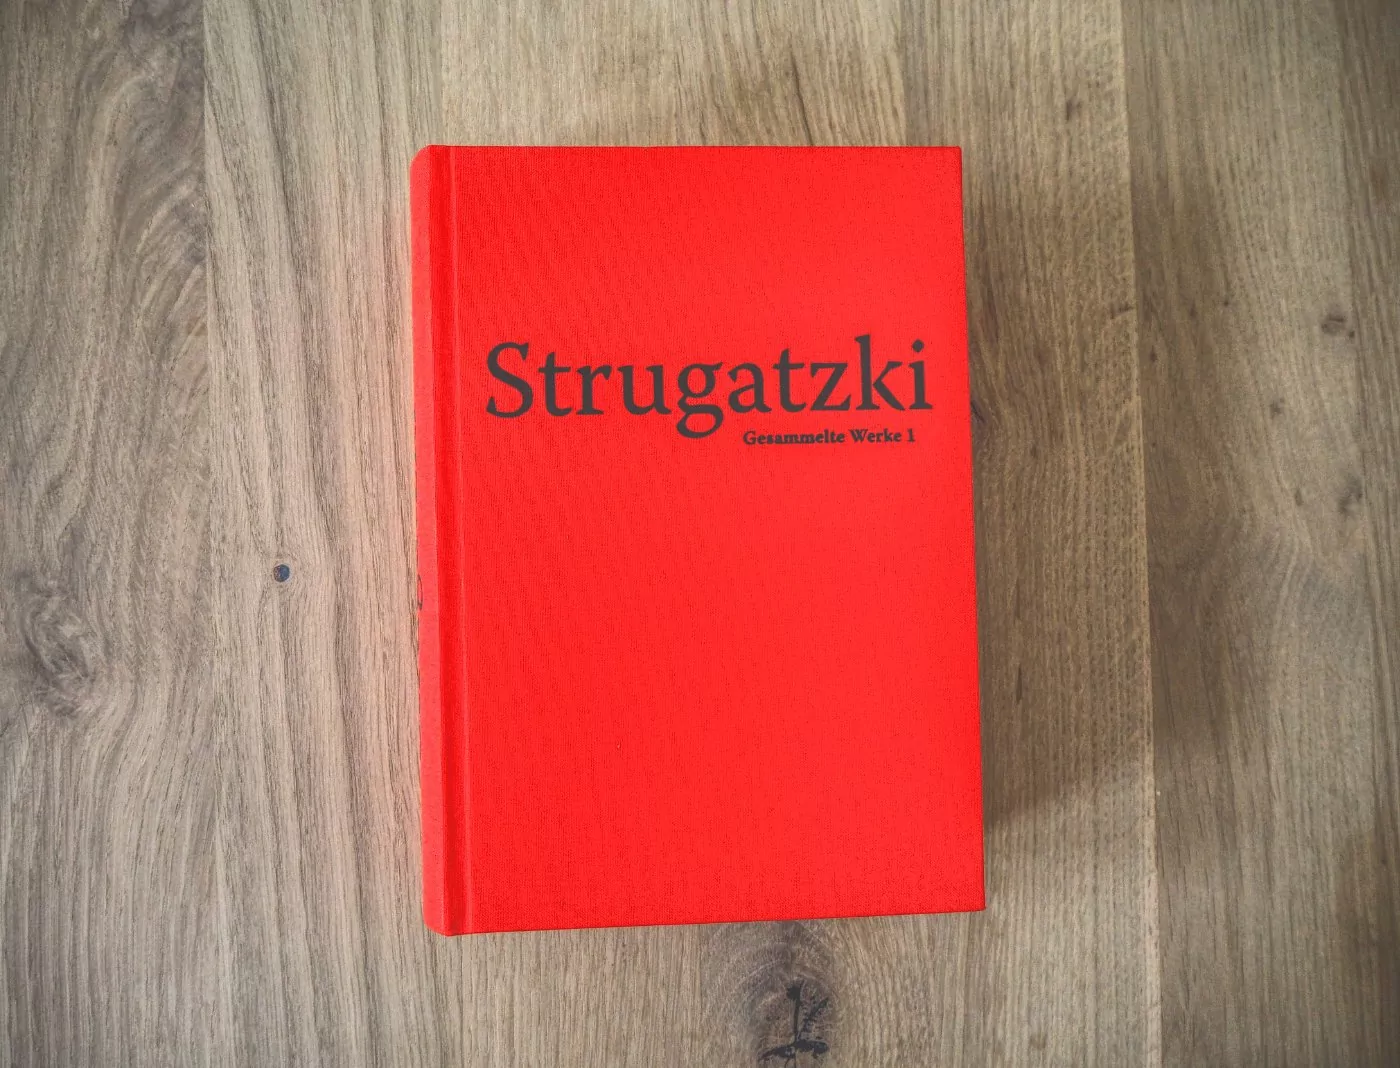 Ein rotes Buch mit dem Wort Strugatzki darauf.